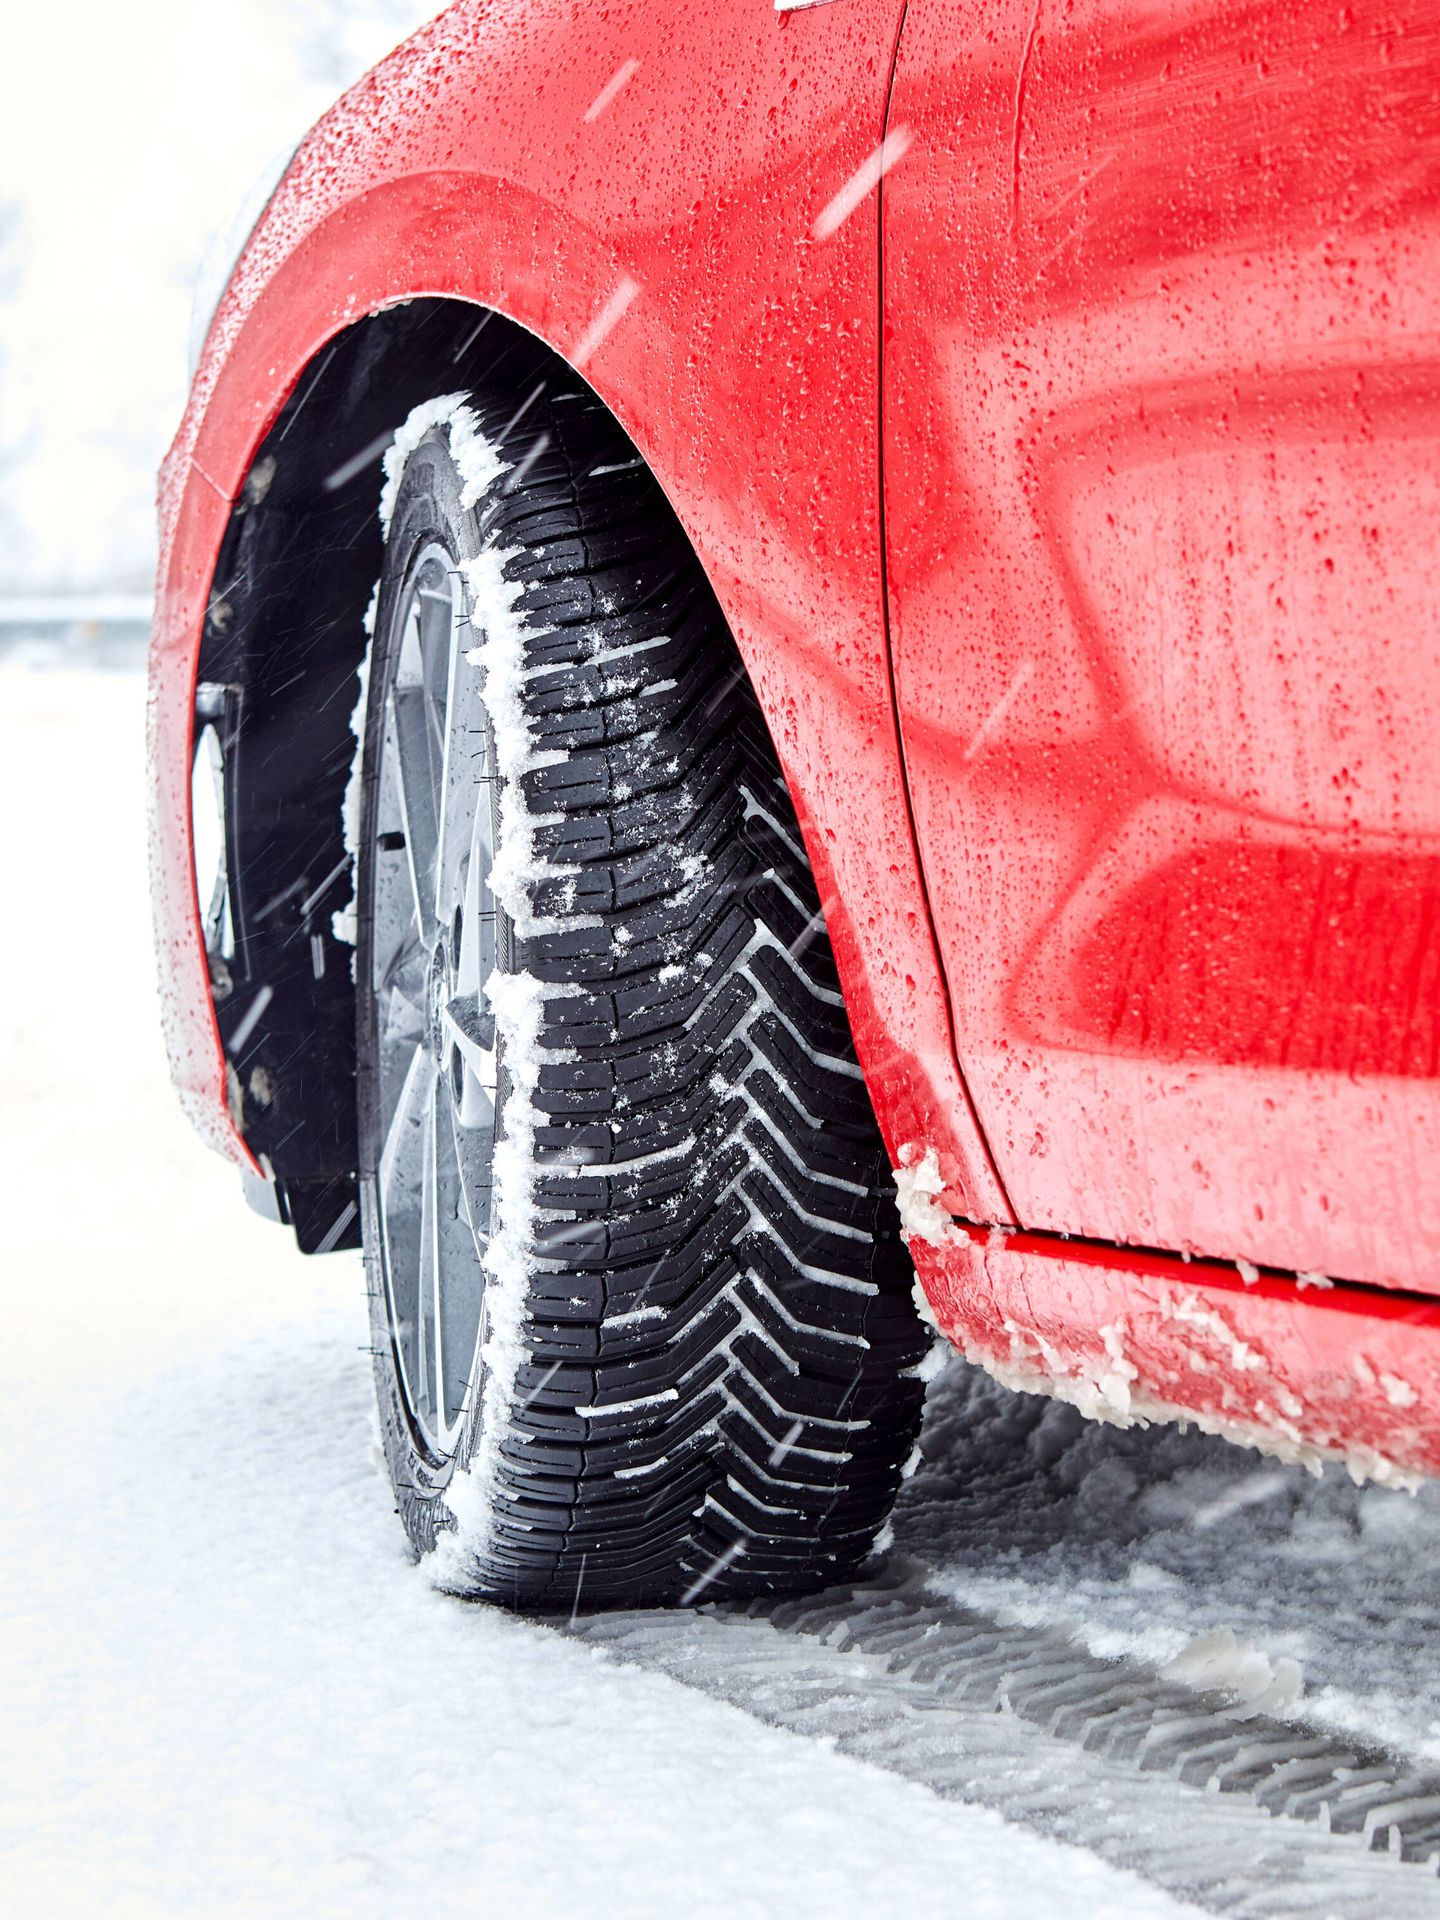 Los neumáticos todo tiempo y los específicos de invierno no requieren el uso de cadenas.